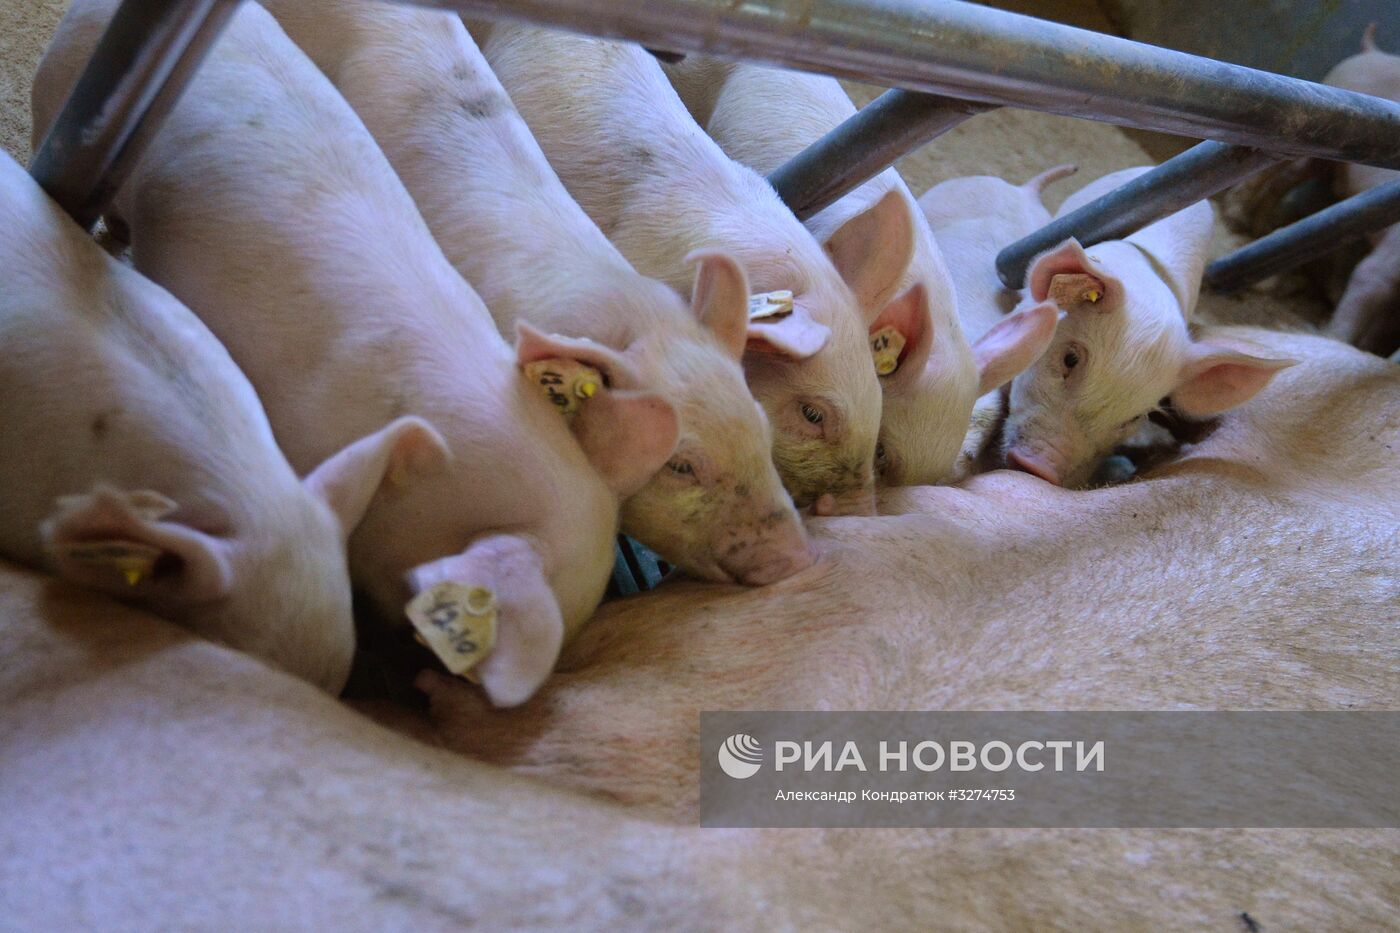 Родниковский свинокомплекс в Челябинской области